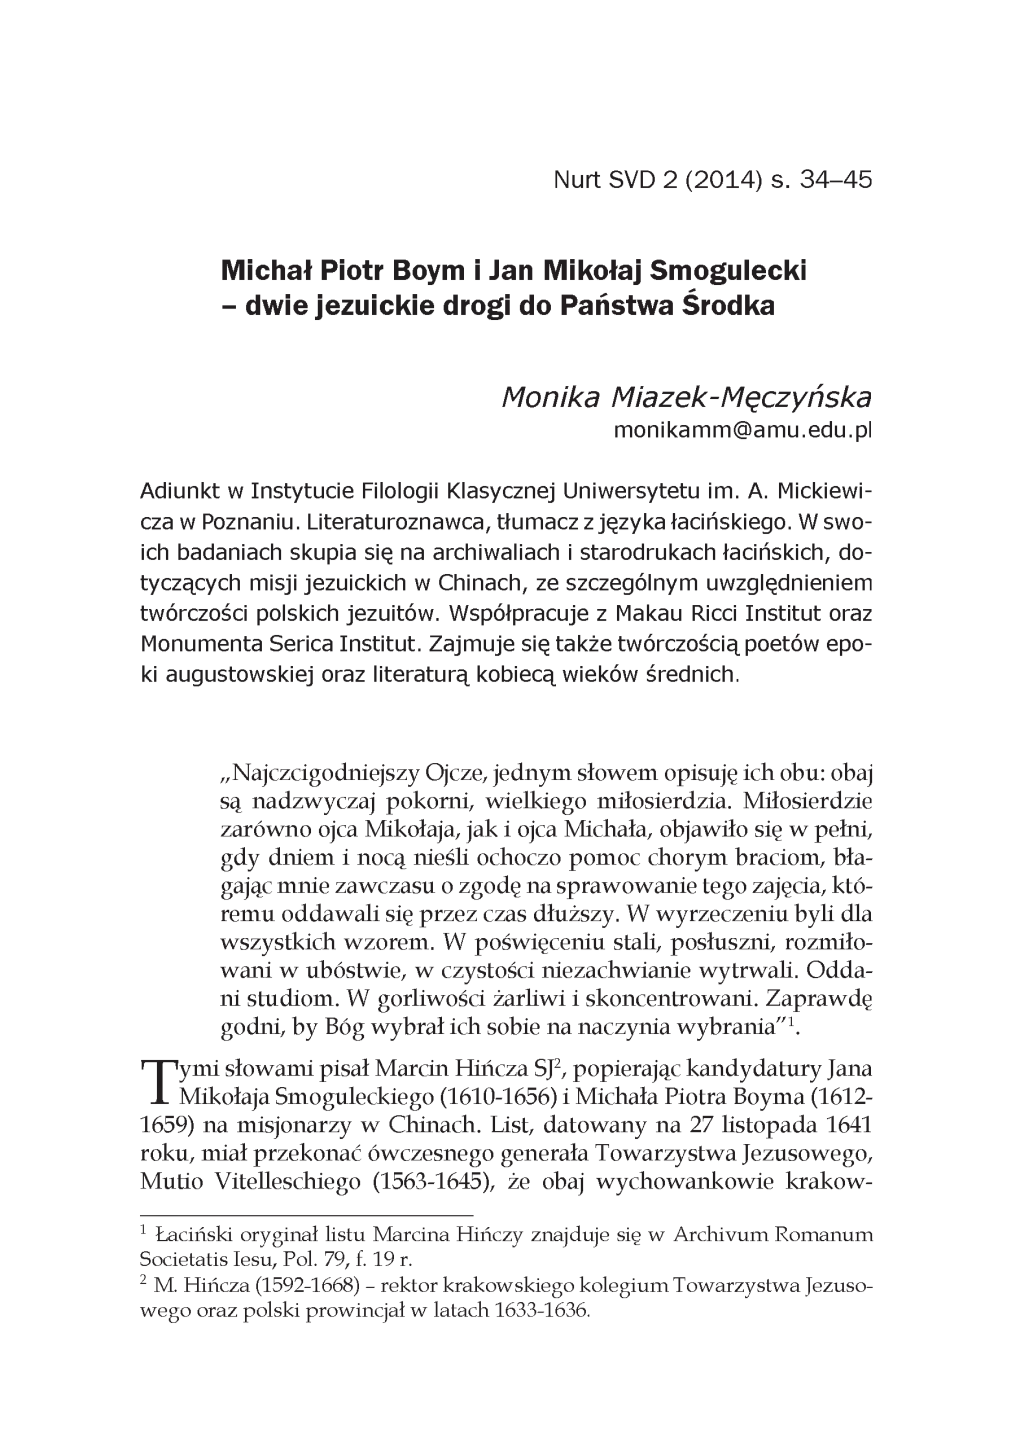 S. 34-45 Monika Miazek-Męczyńska